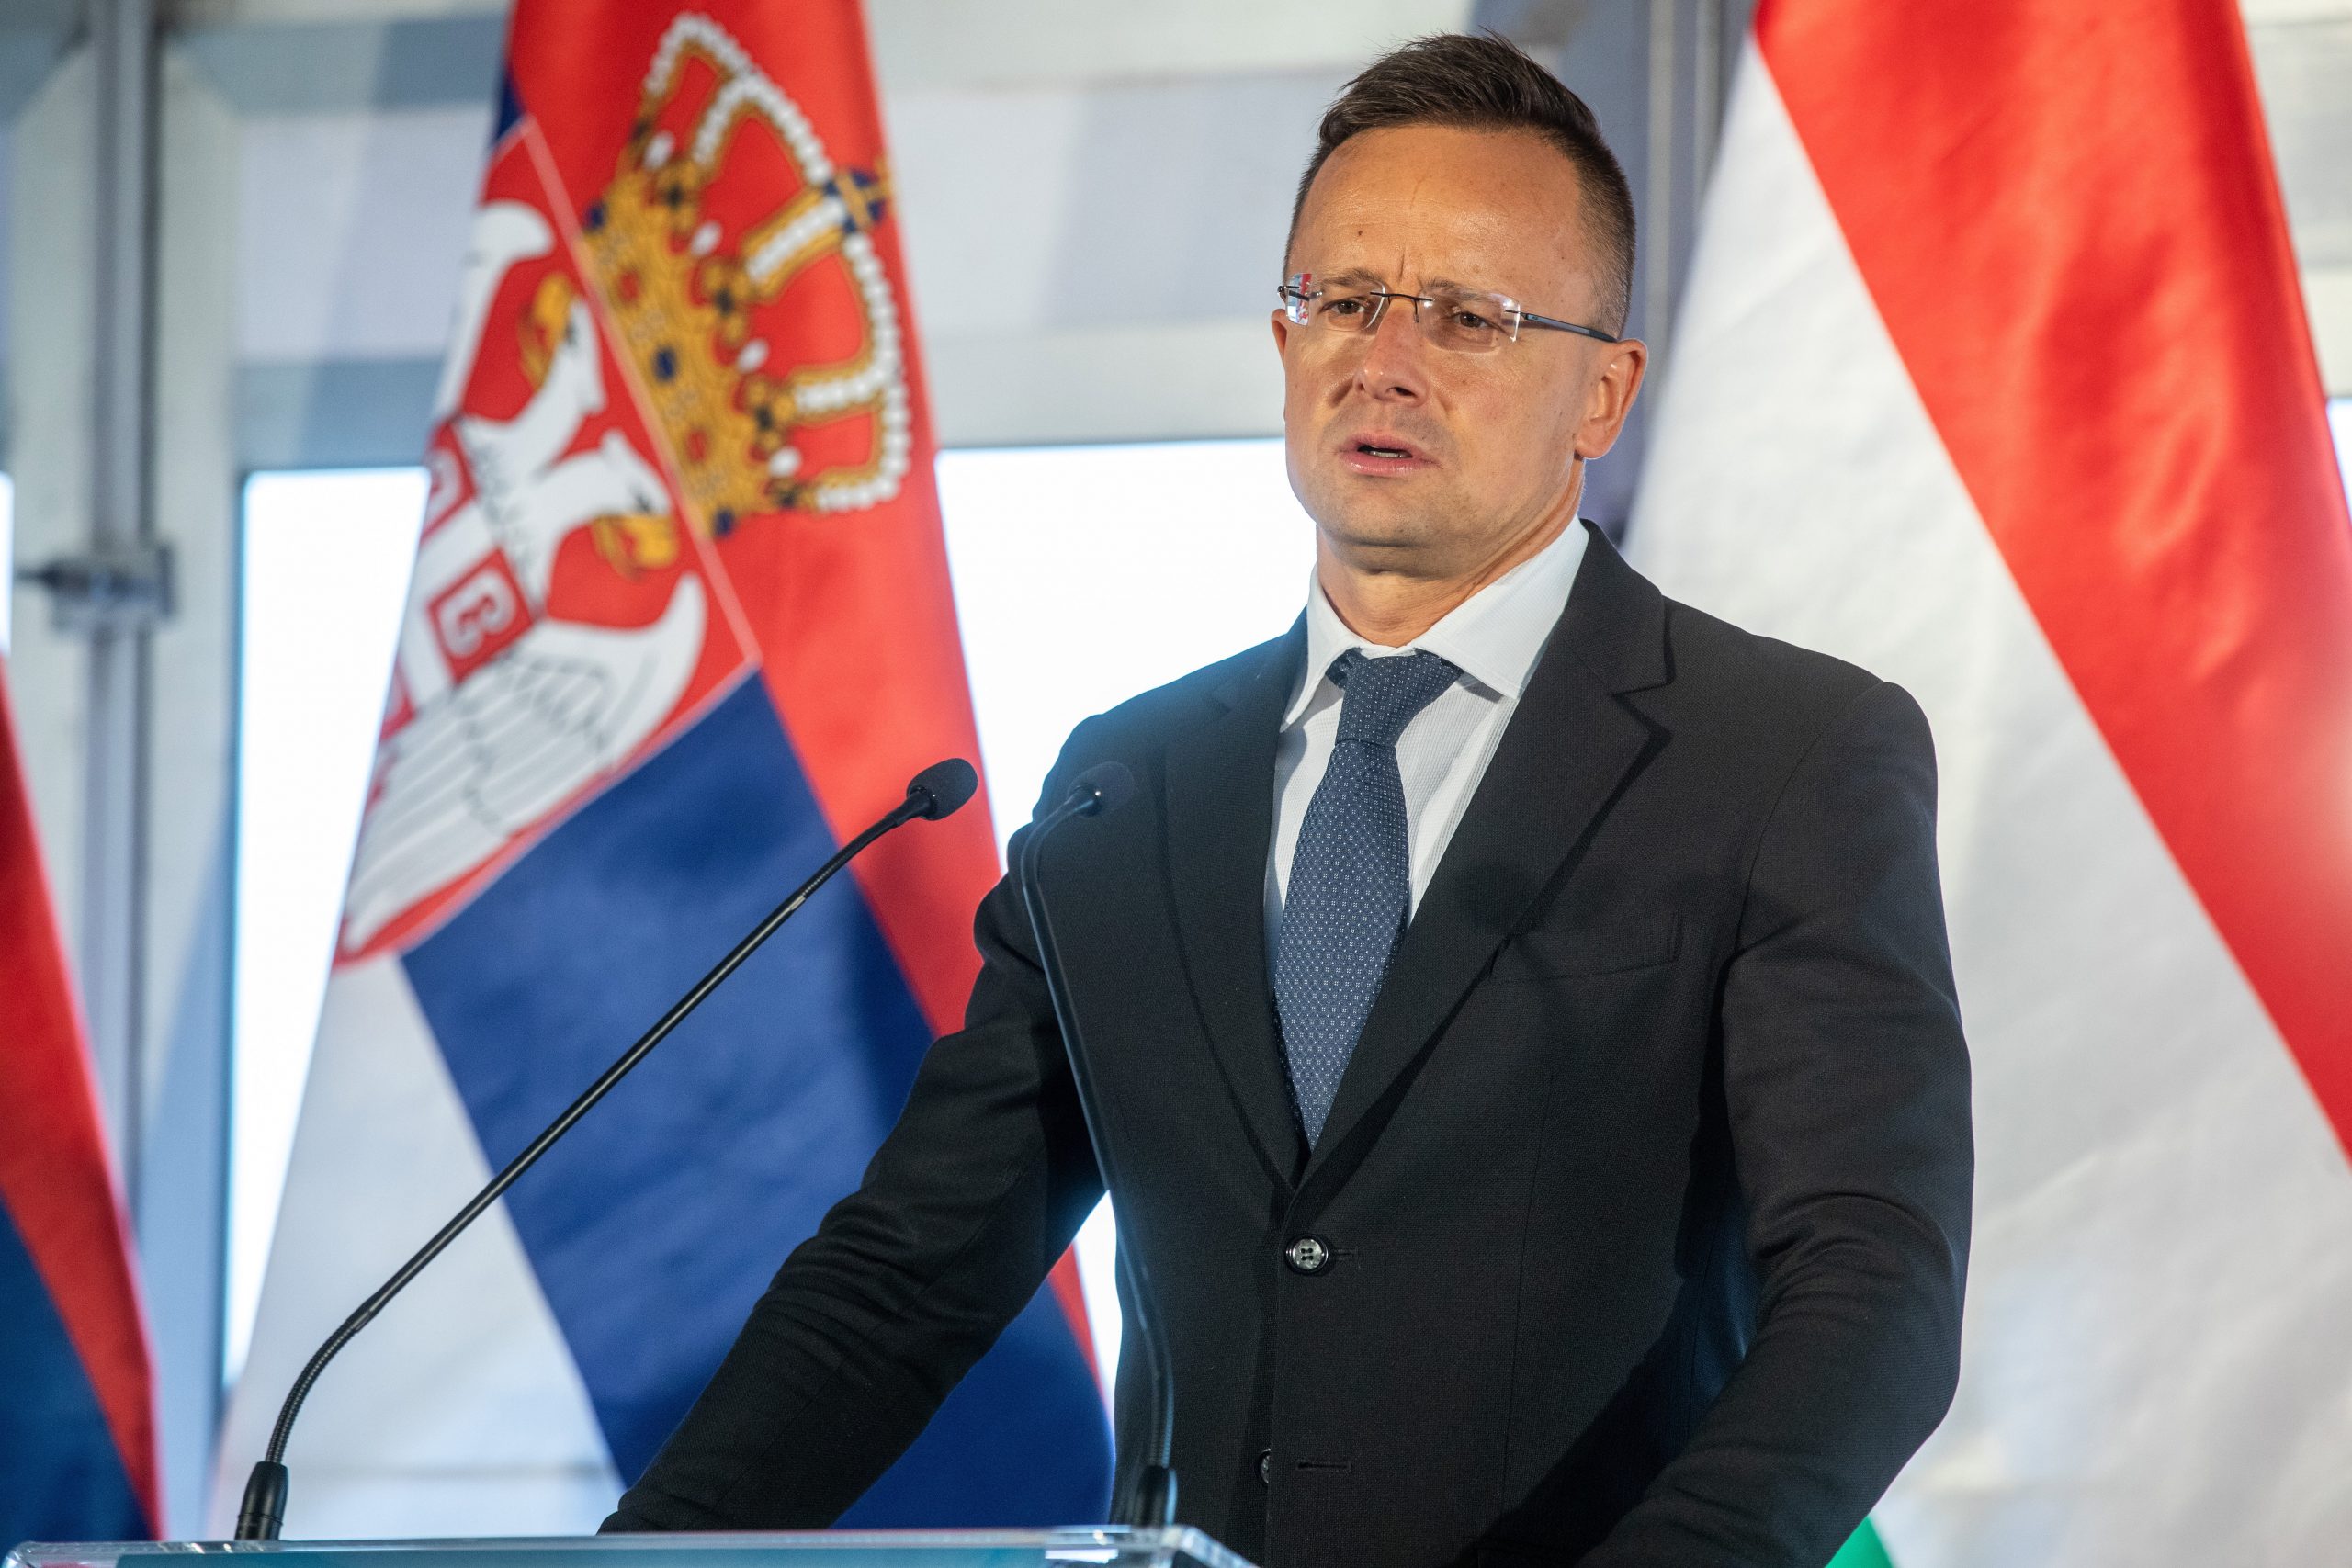 FM Szijjártó: Serbia 'Should Have Joined EU Yesterday'